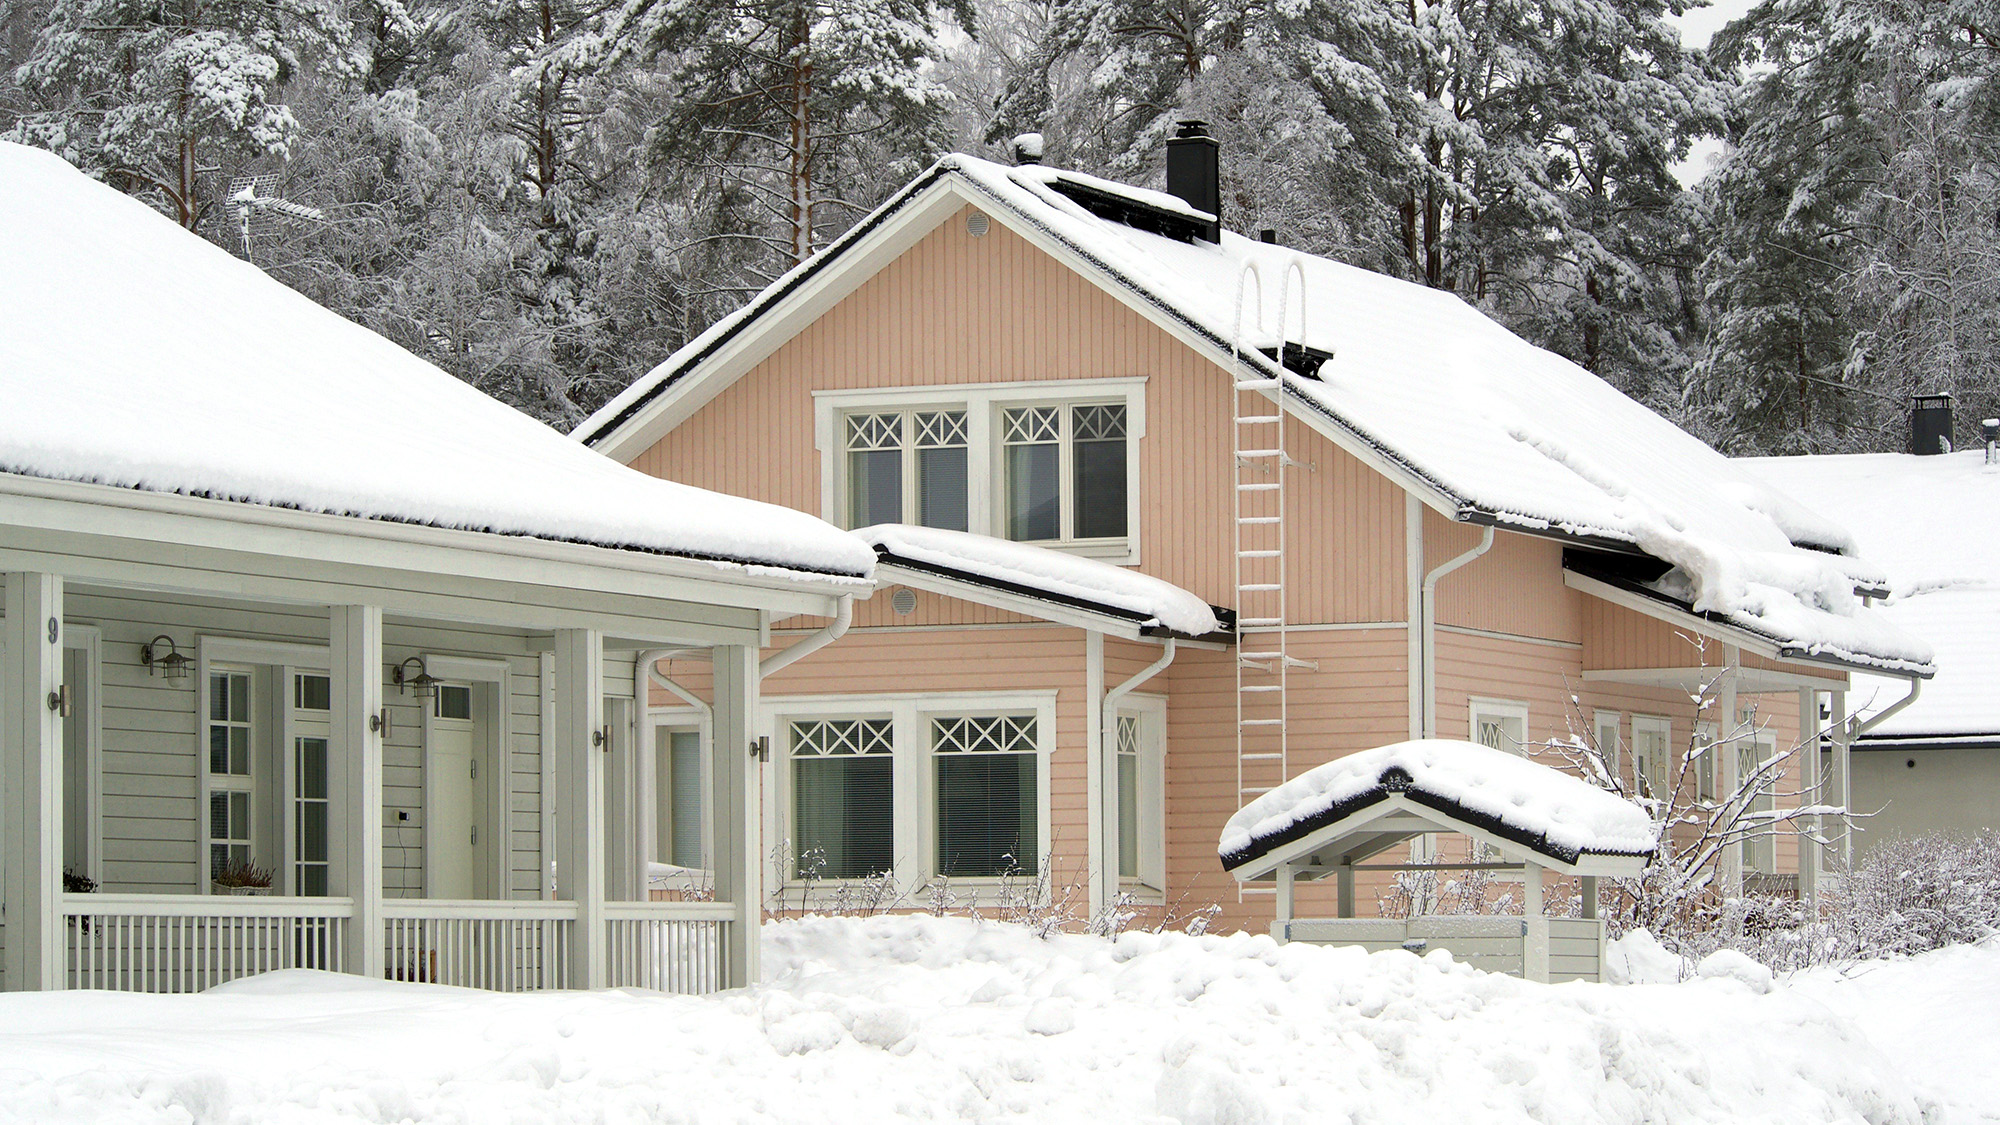 Omakotitaloja talvella, lunta on kerääntynyt talojen katoille ja pihamaille.